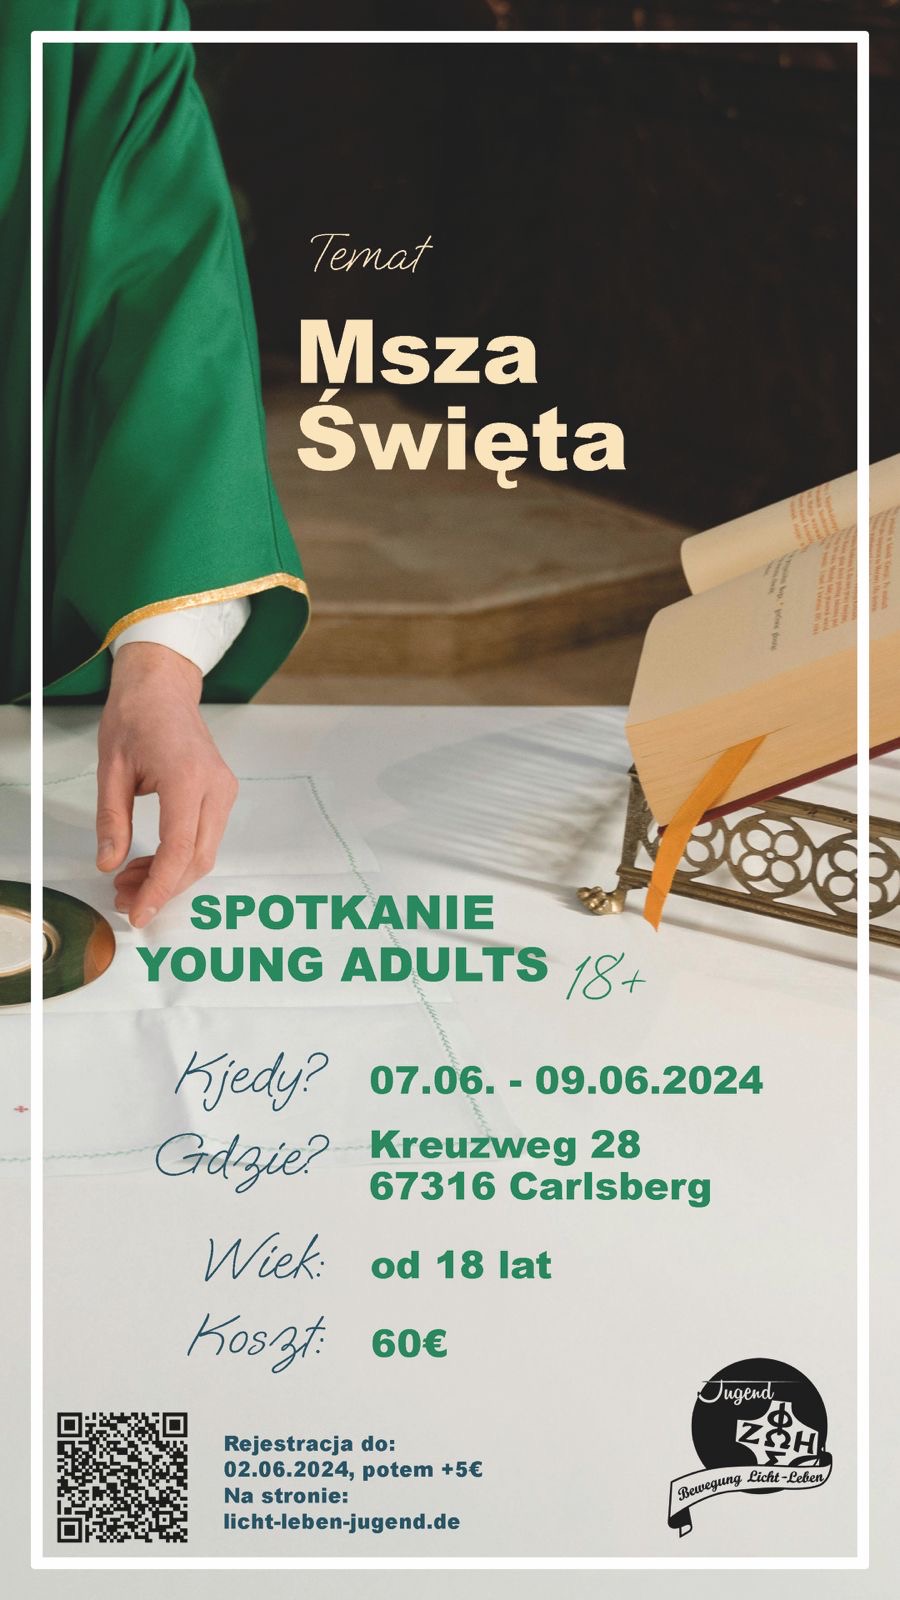 Spotkanie młodzieżowe 18+ w Carlsbergu (07.06-09.06.2024)